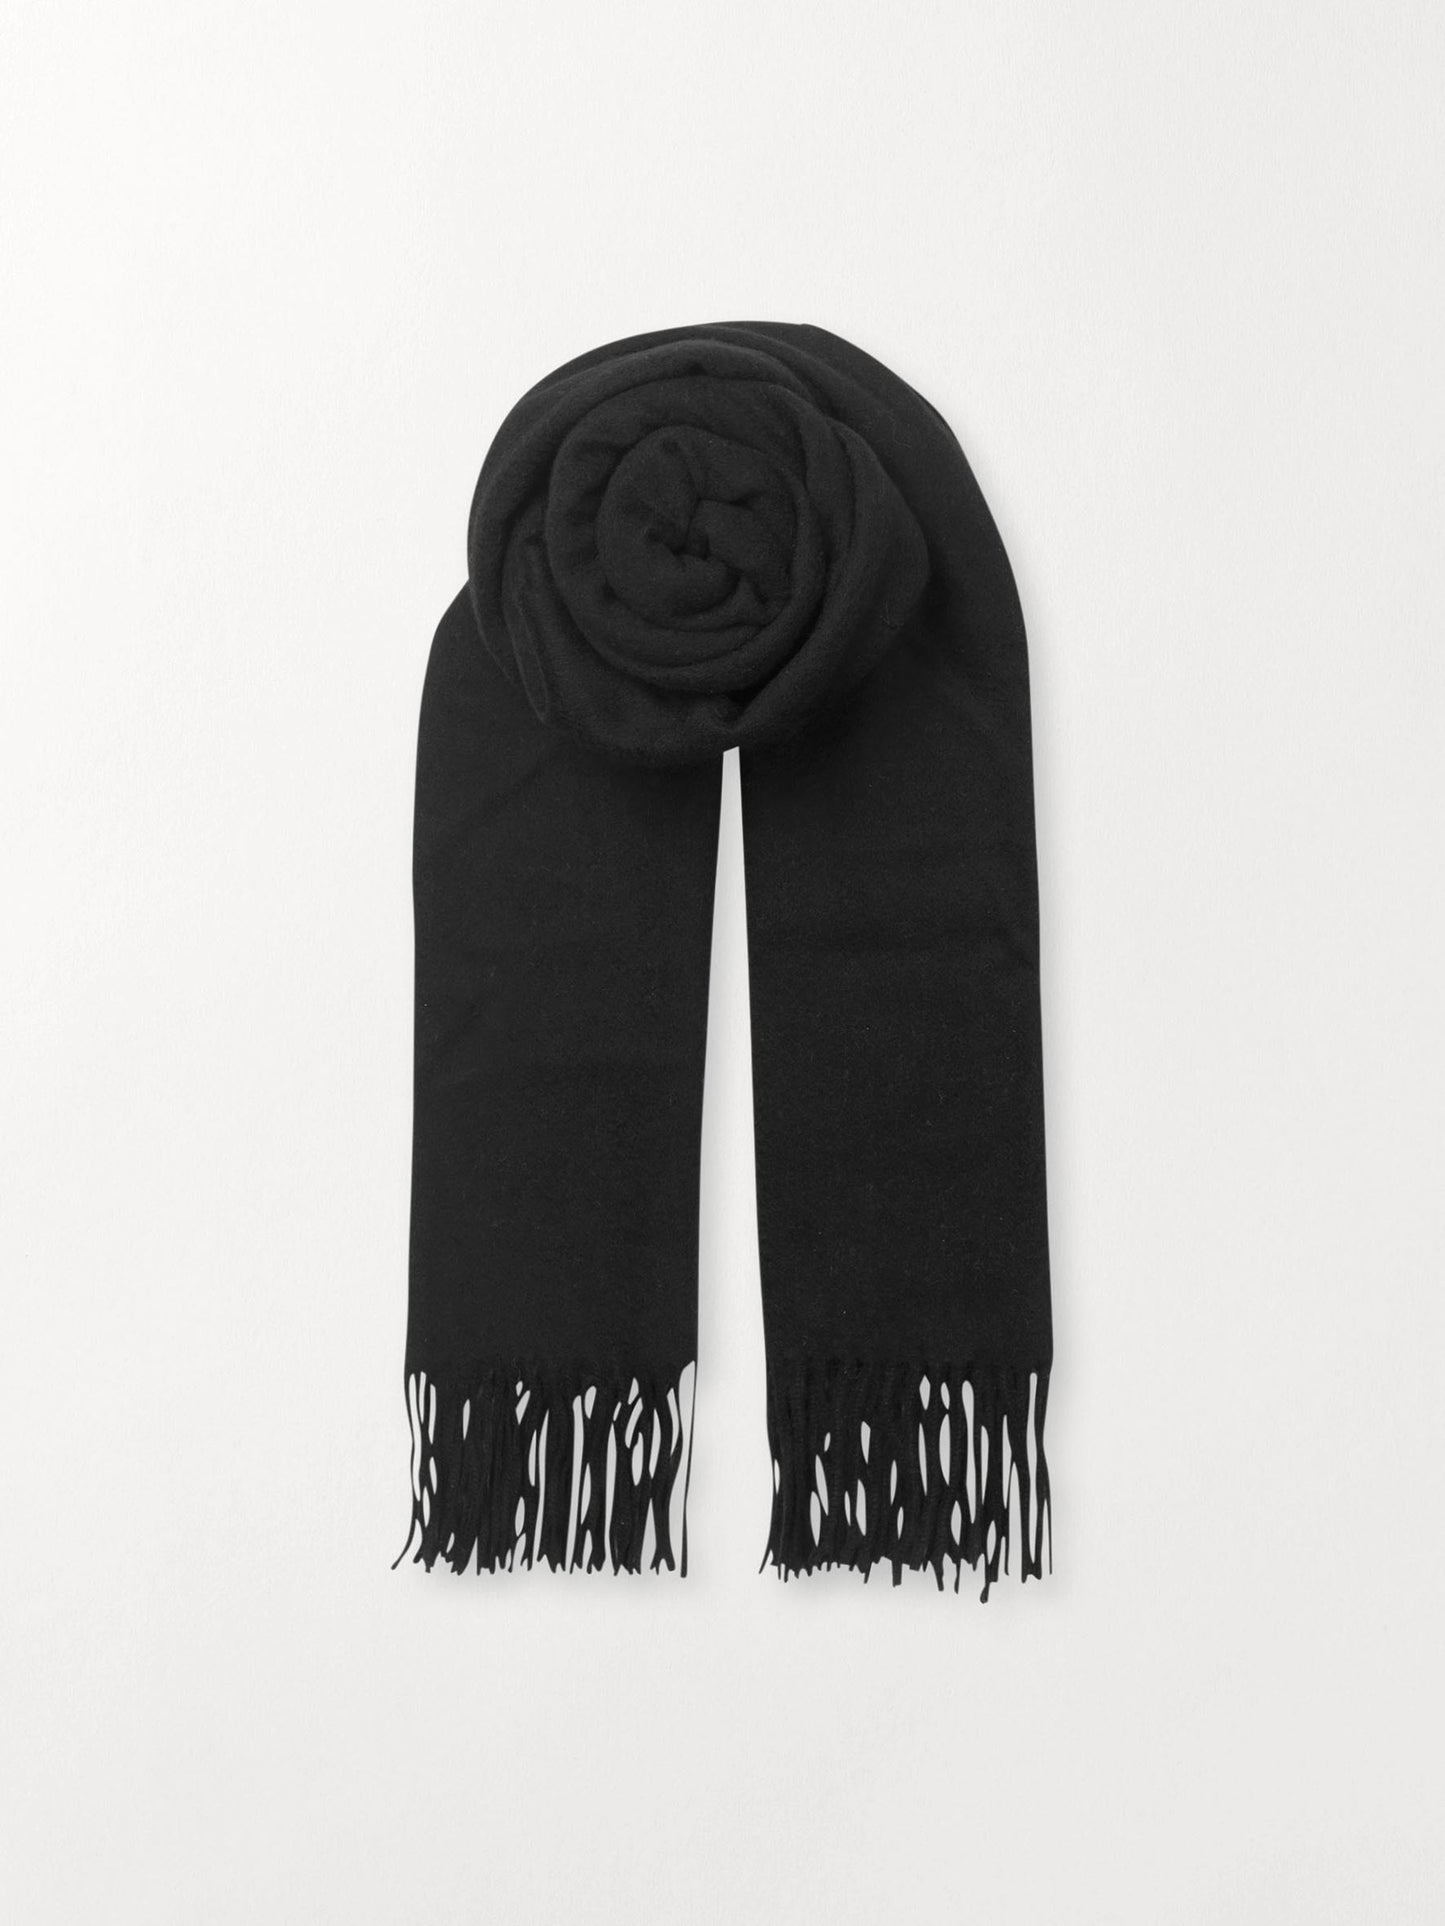 Becksöndergaard, Crystal Edition Scarf - Black, scarves, scarves, gifts